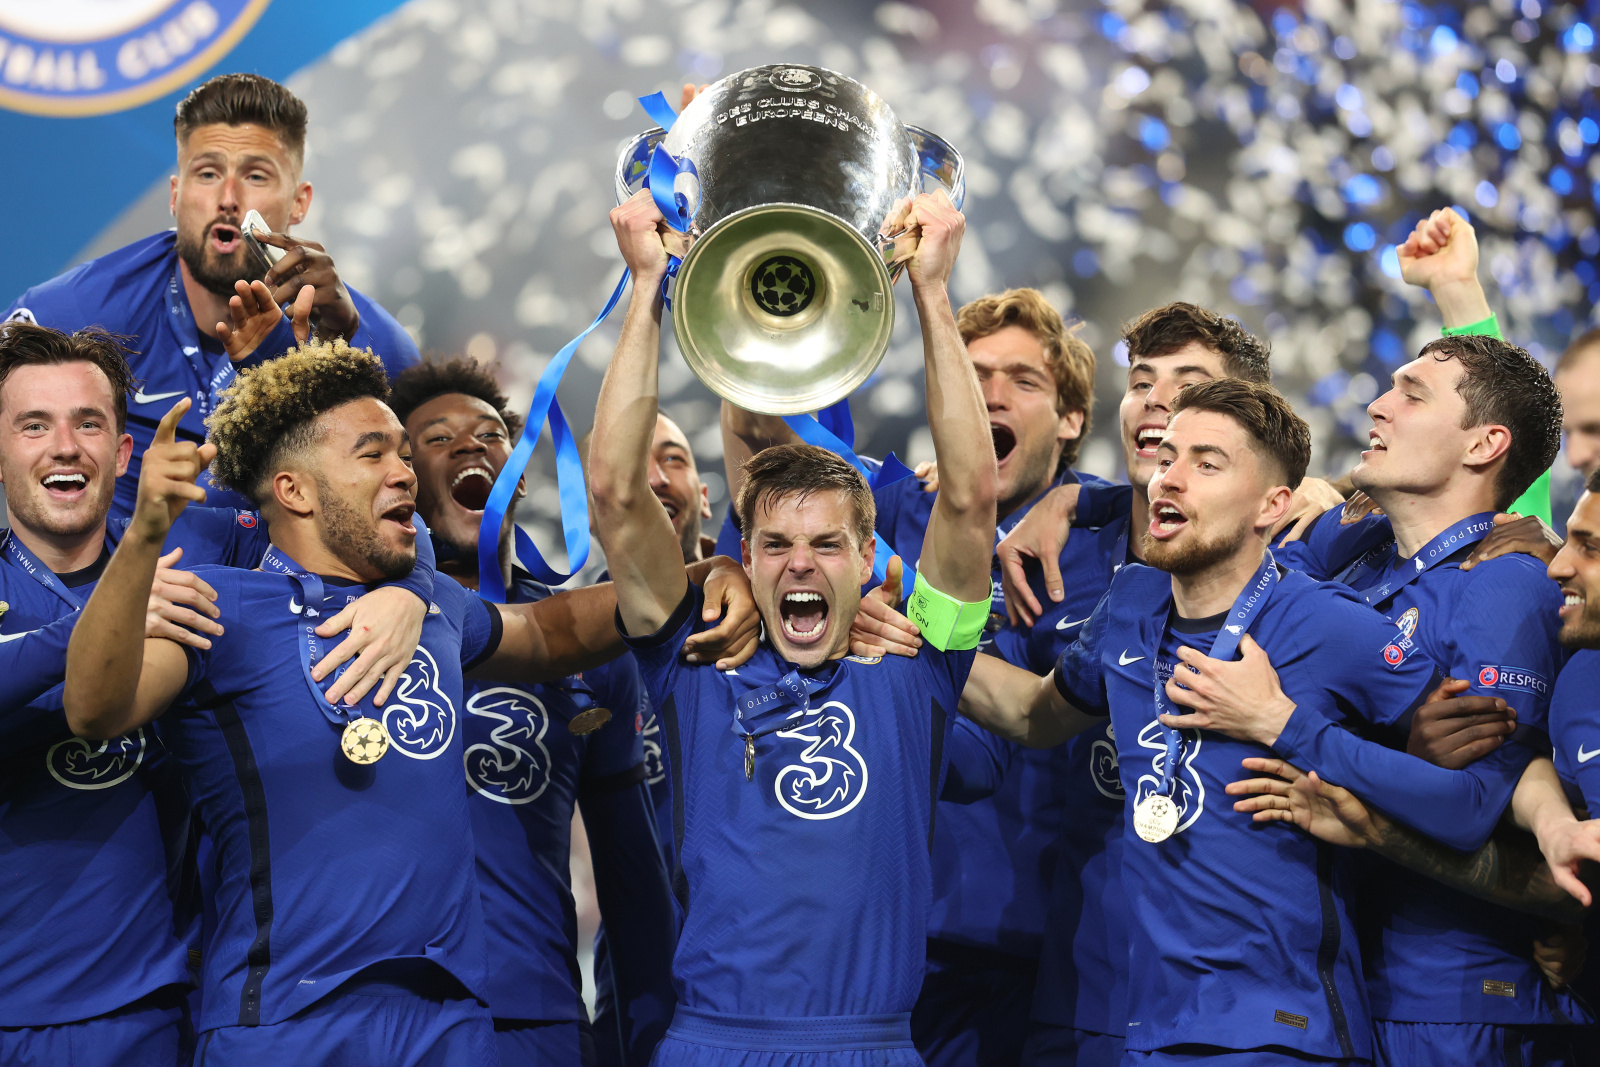 Chelsea feiert den Gewinn der Champions League im Jahr 2021, aber viele dieser Spieler sind inzwischen weitergezogen